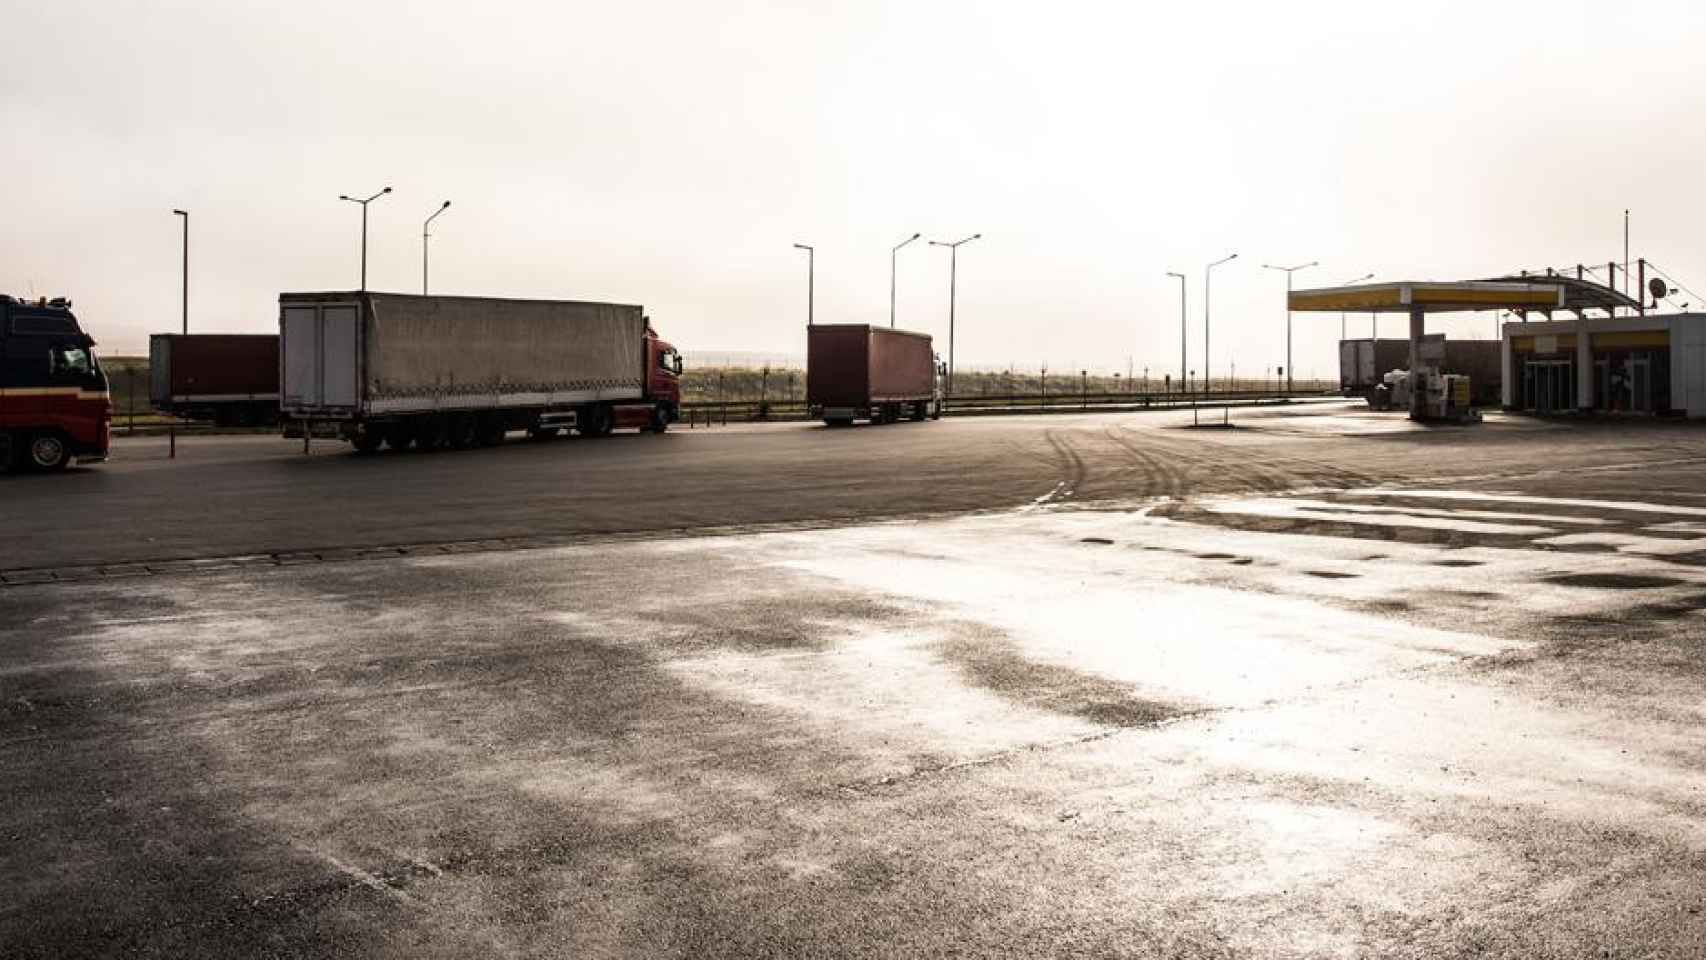 Camioneros con sus vehículos aparcados en el área de descanso de una gasolinera / CG